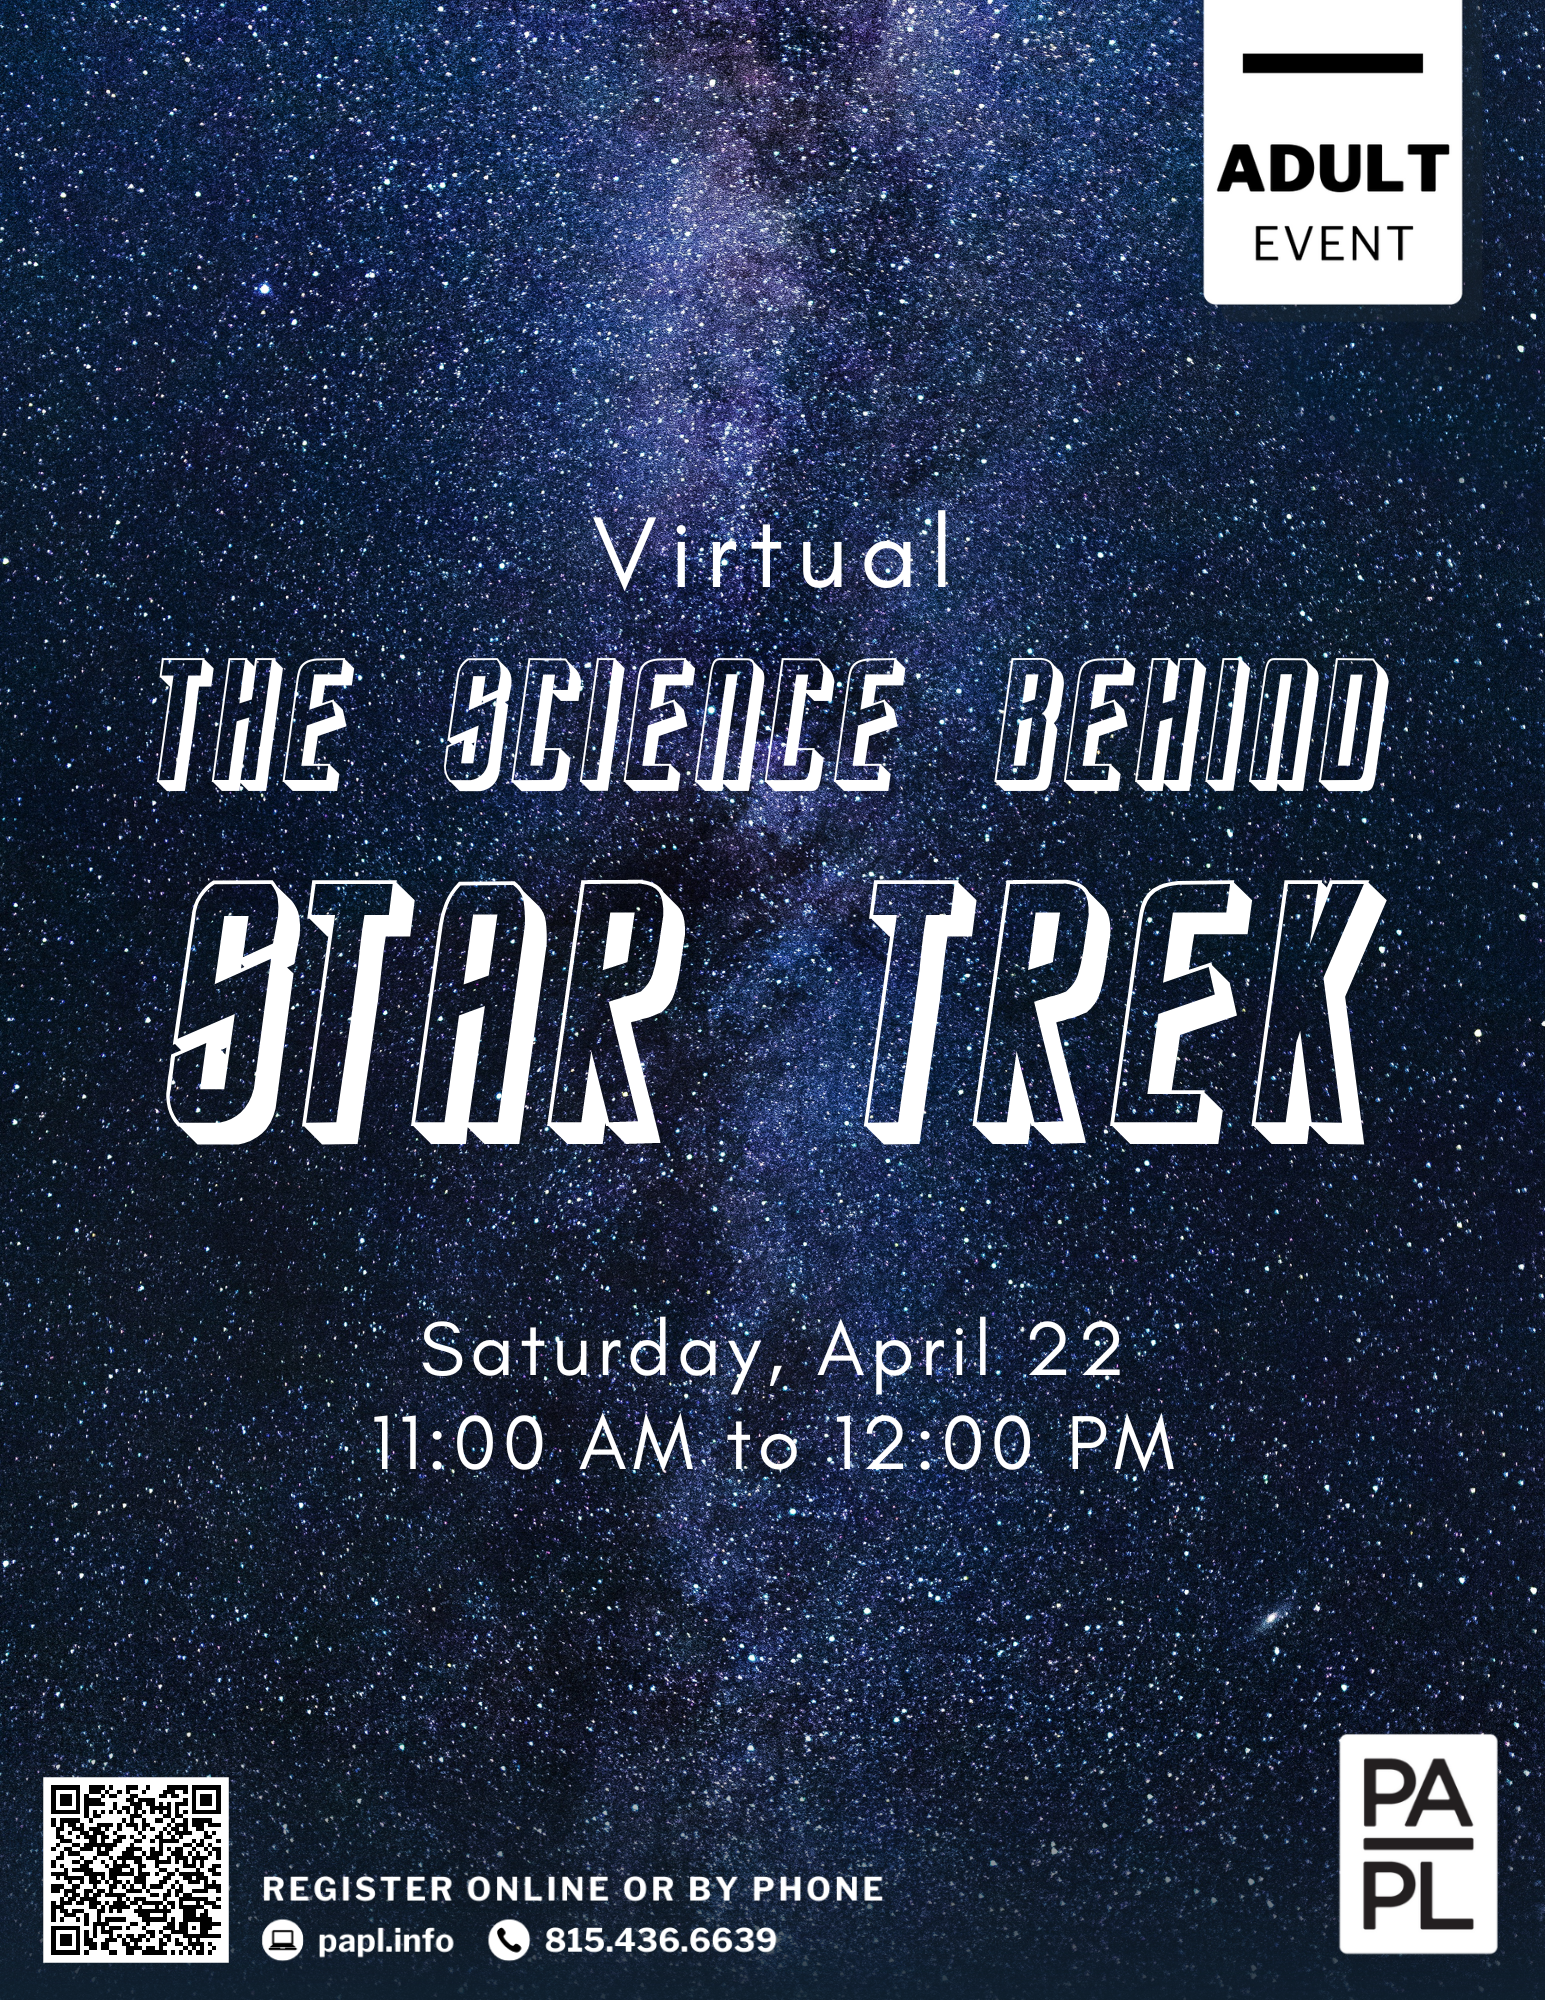 Virtual The Science Behind Star Trek